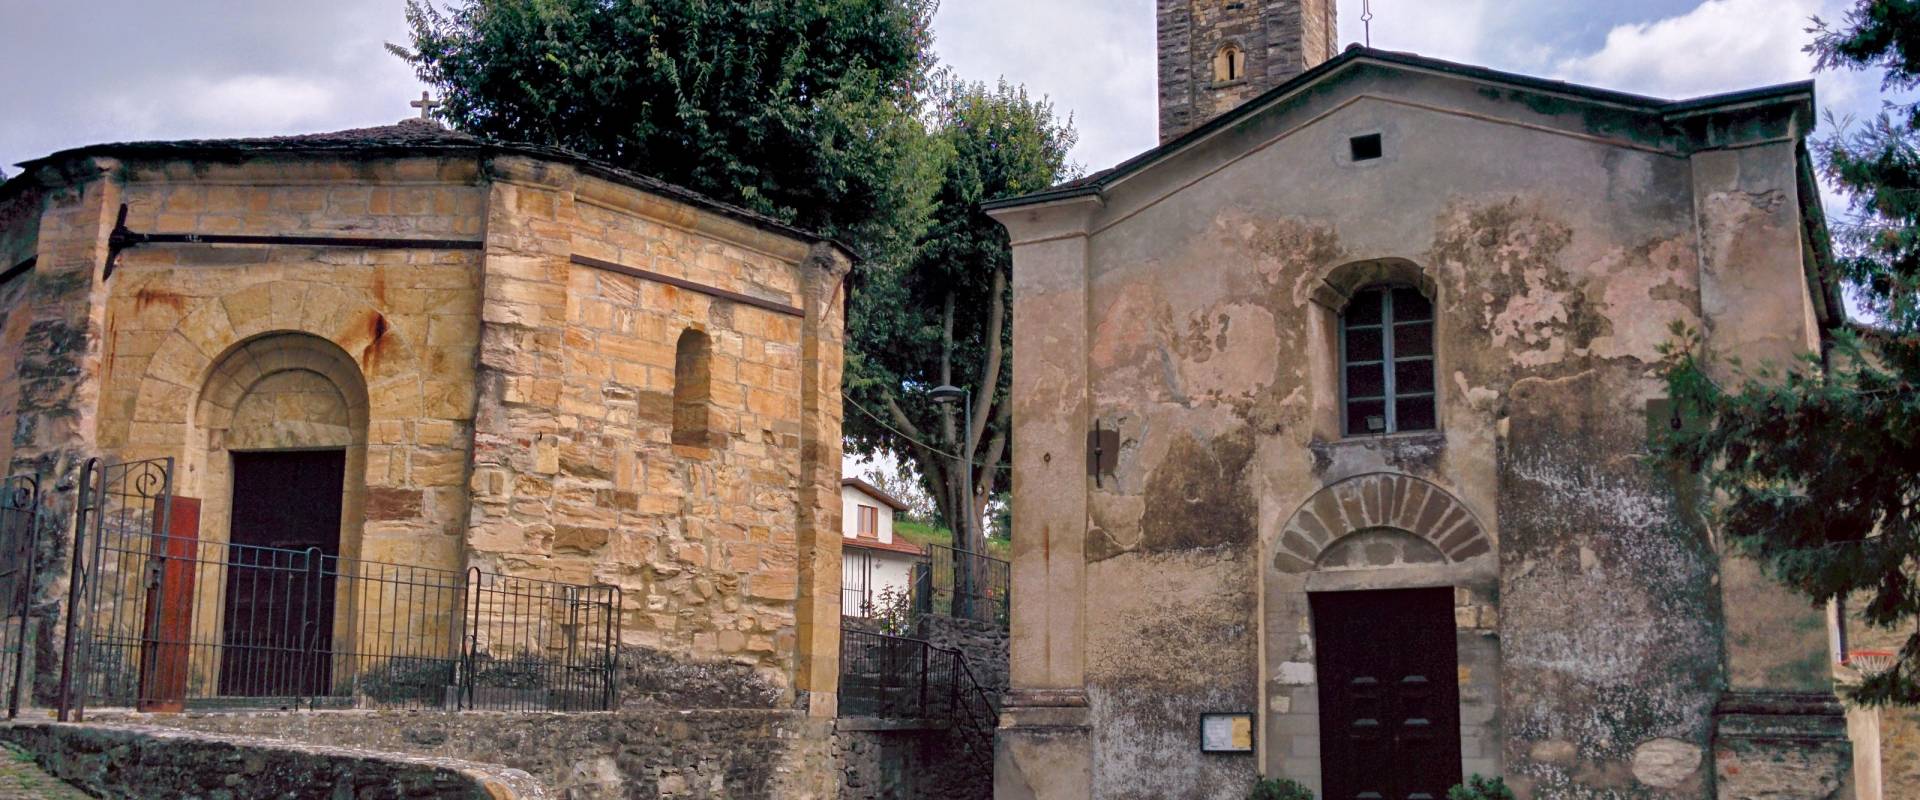 Battistero di Serravalle, Varano de' Melegari, Parma 6 foto di Carloferrari